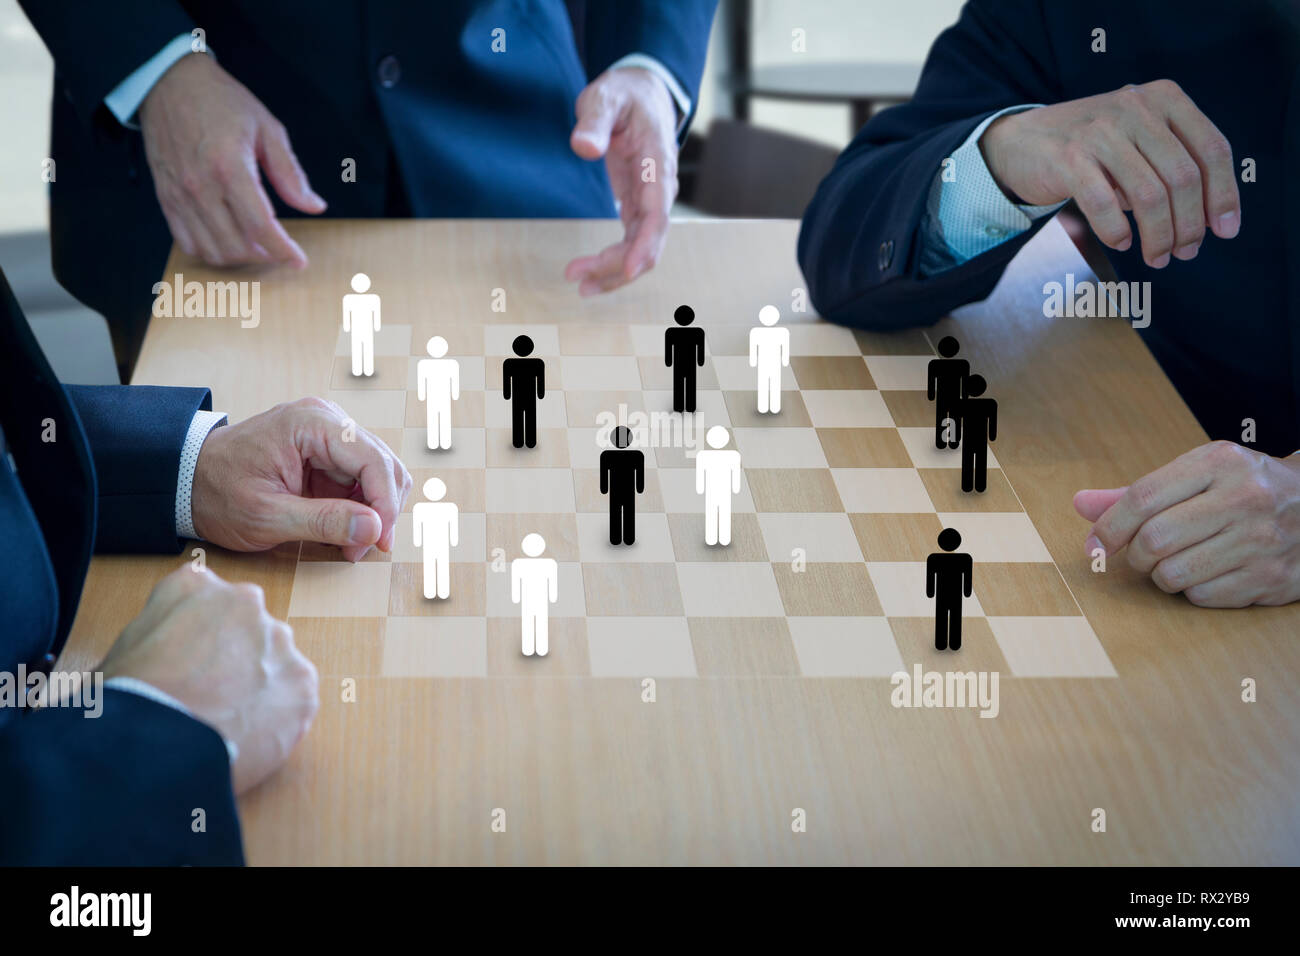 Drei business Administratoren spielen Checkers oder Entwürfe auf einer hölzernen Schachbrettmuster oder draftboard im Konzept der Personal- oder Human Resource. Stockfoto